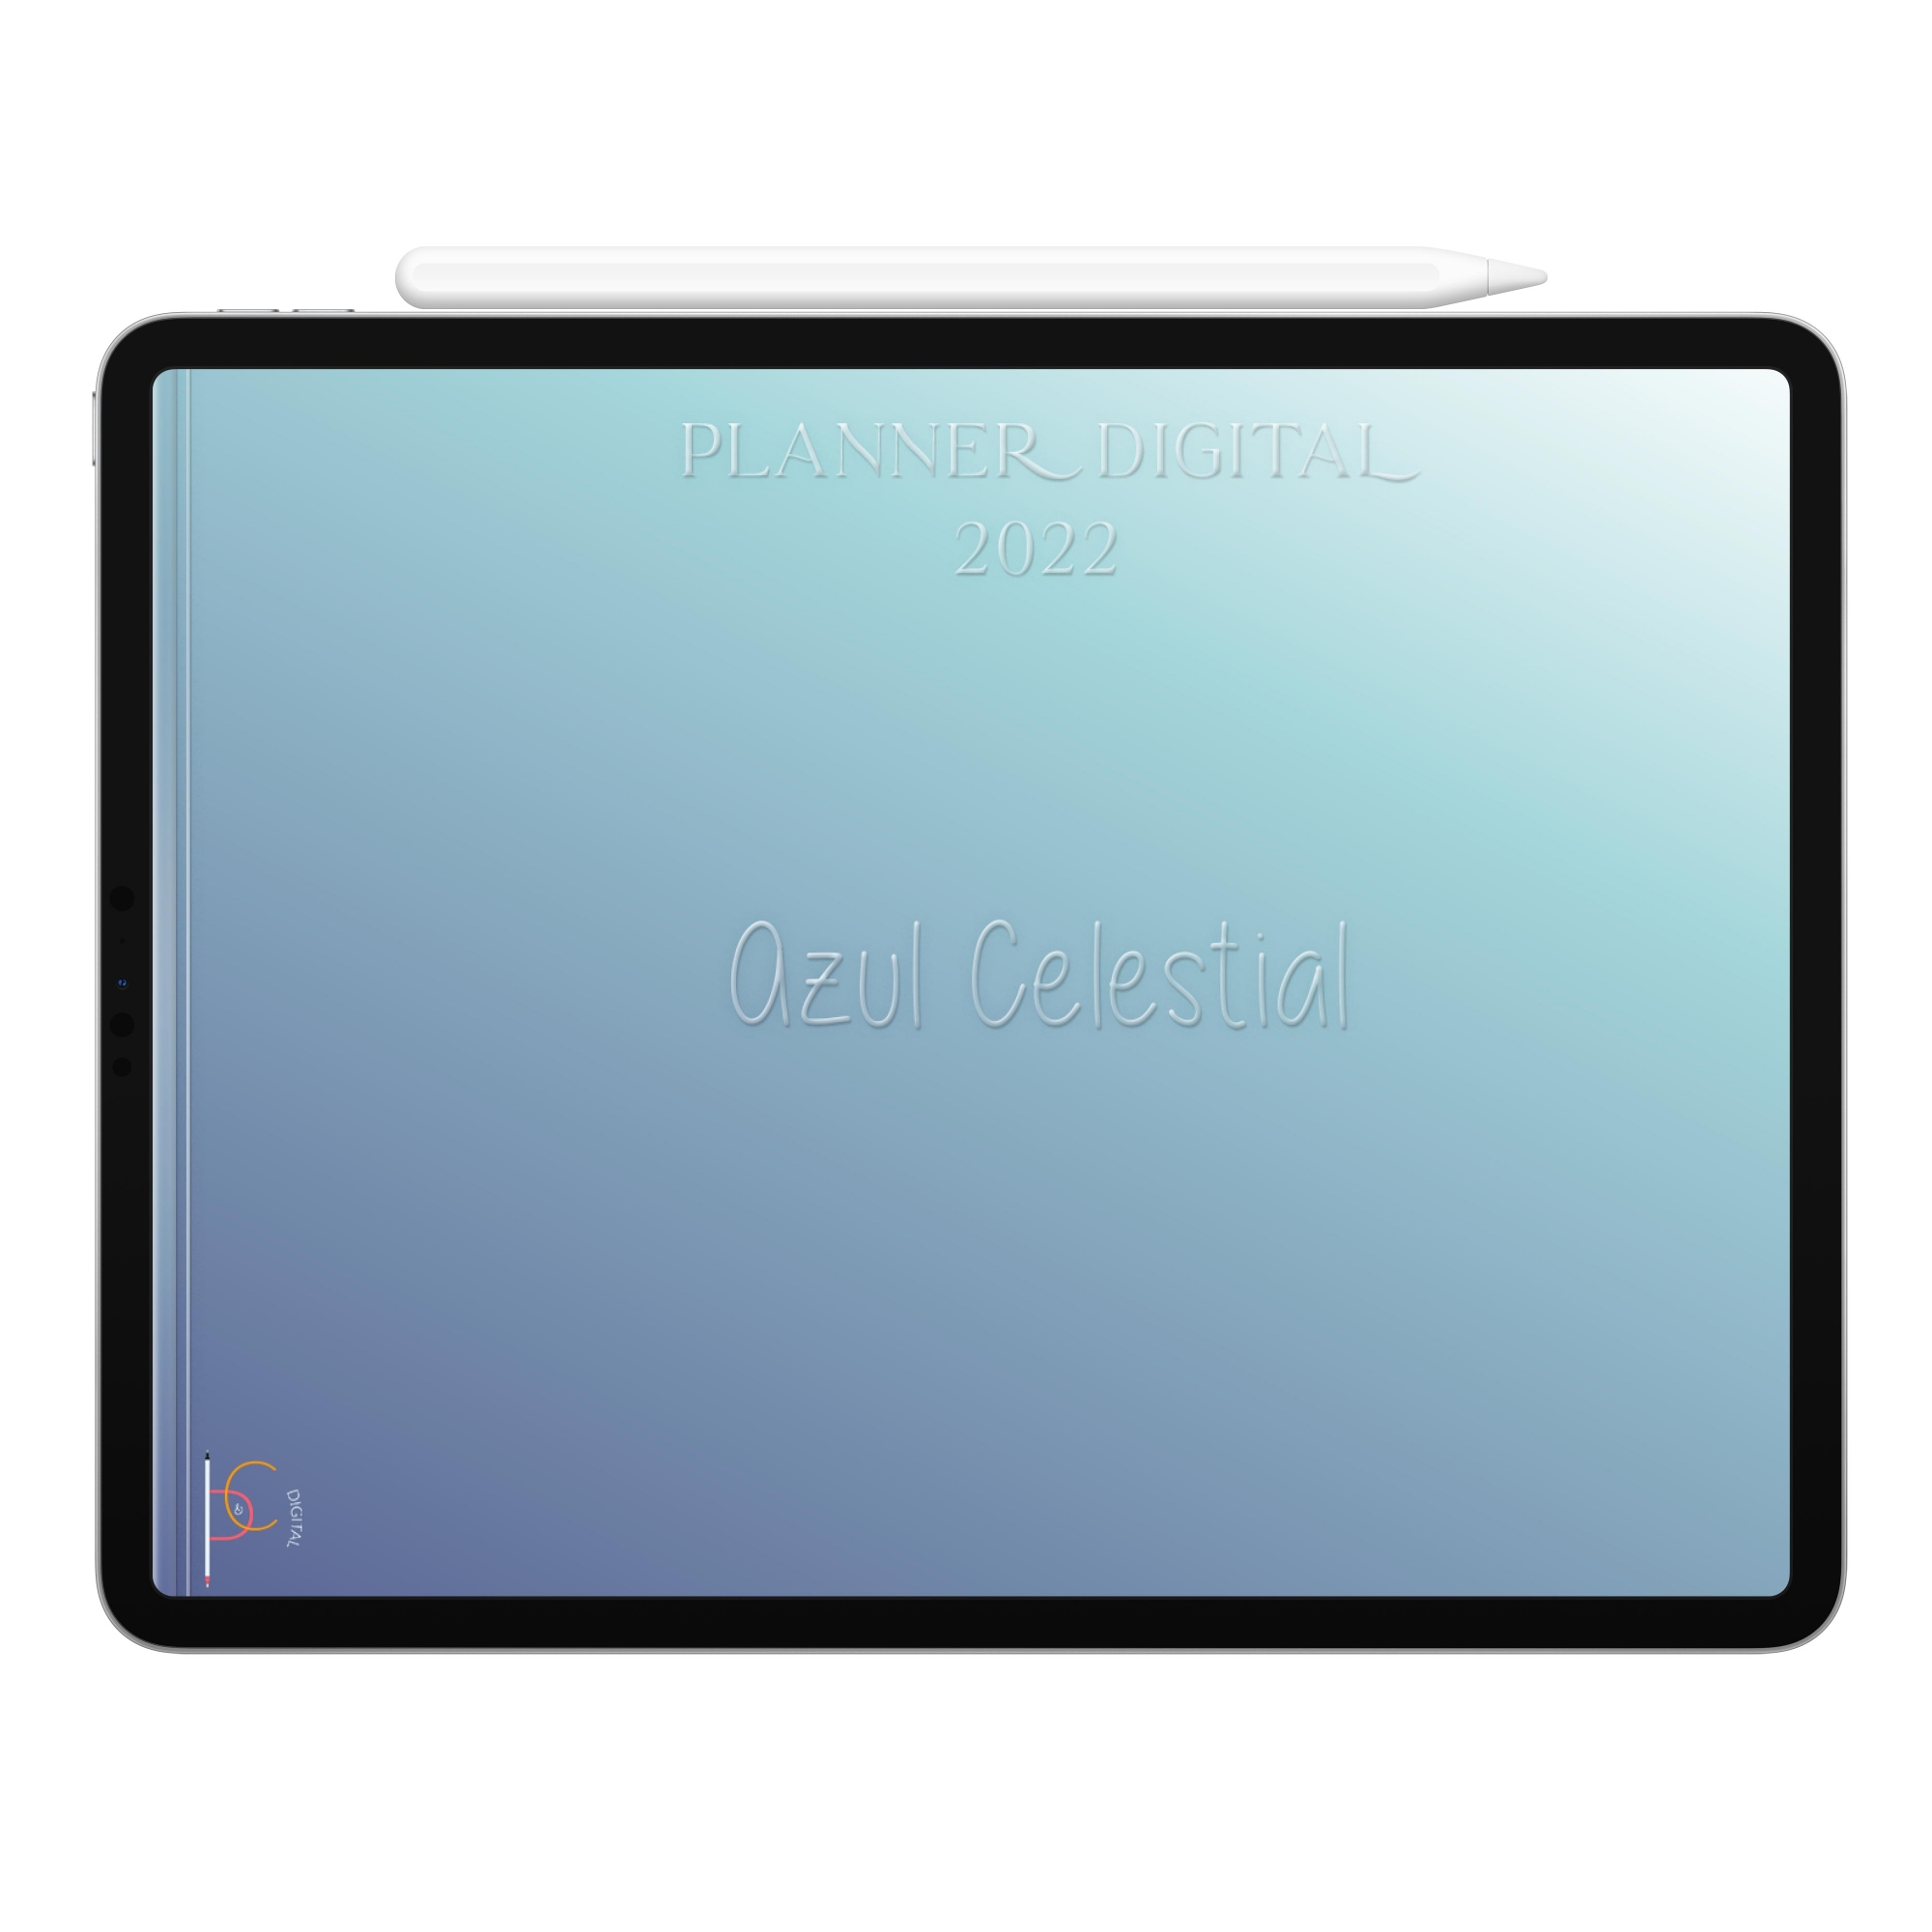 Planner Digital 2022 Azul Celestial | Planejamento da Vida, Organização, Produtividade| iPad Tablet | Download